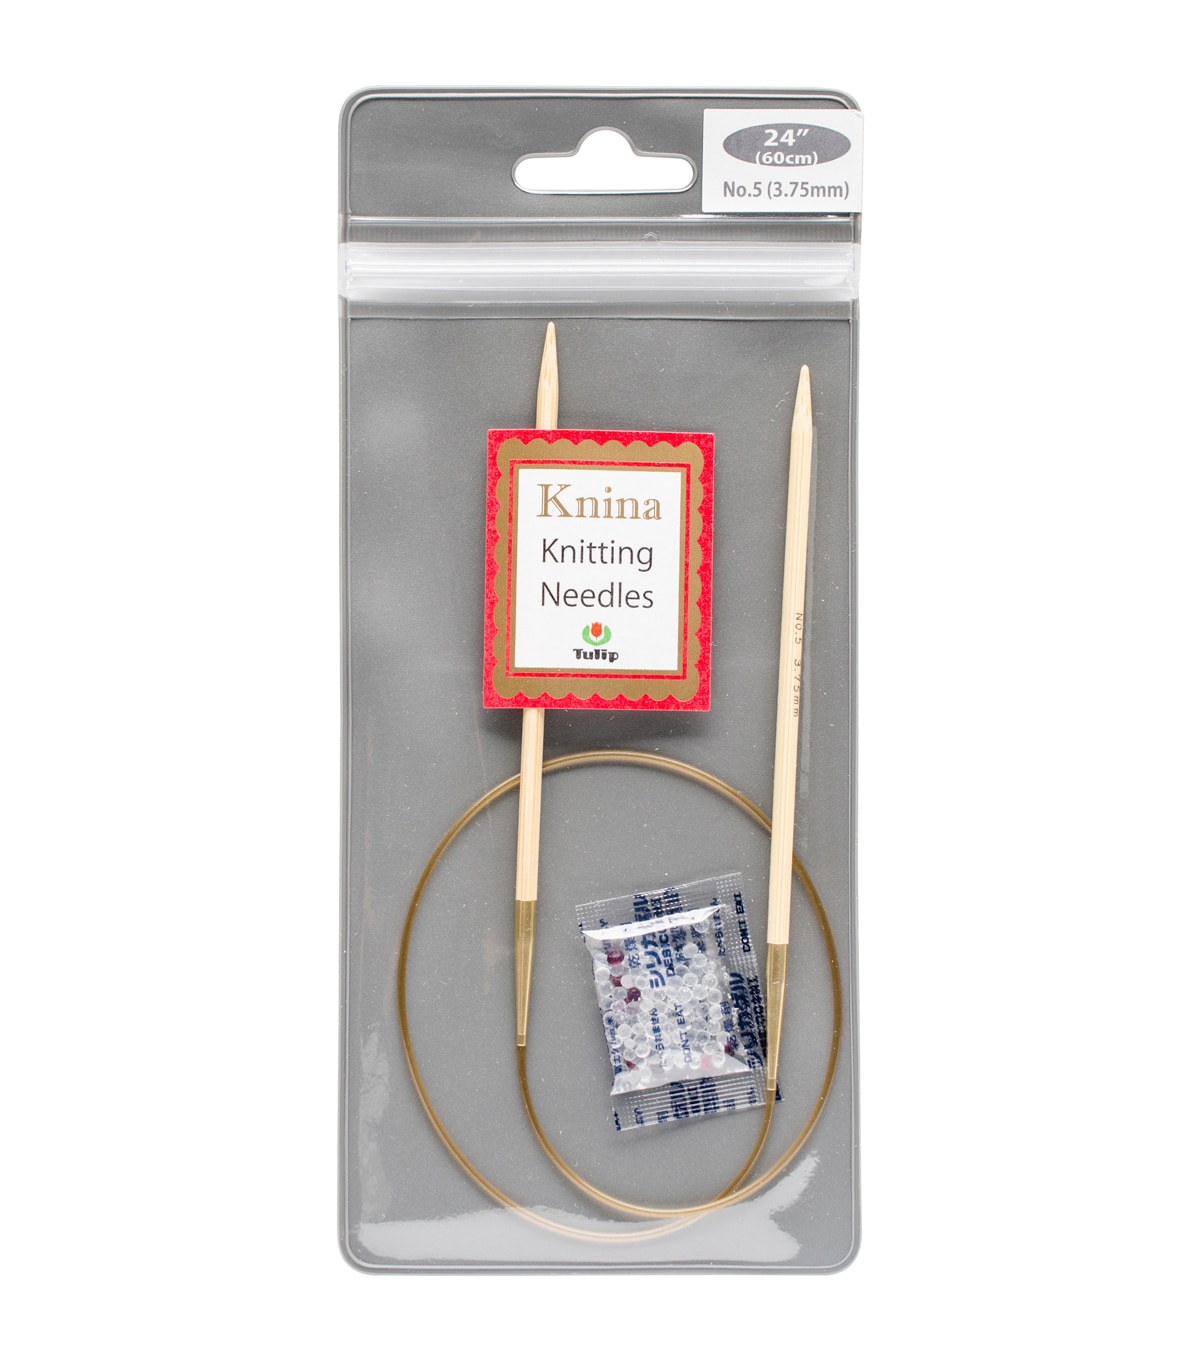 Tulip Needle Company Knina Knitting Needles 24'' Size 5 | JOANN